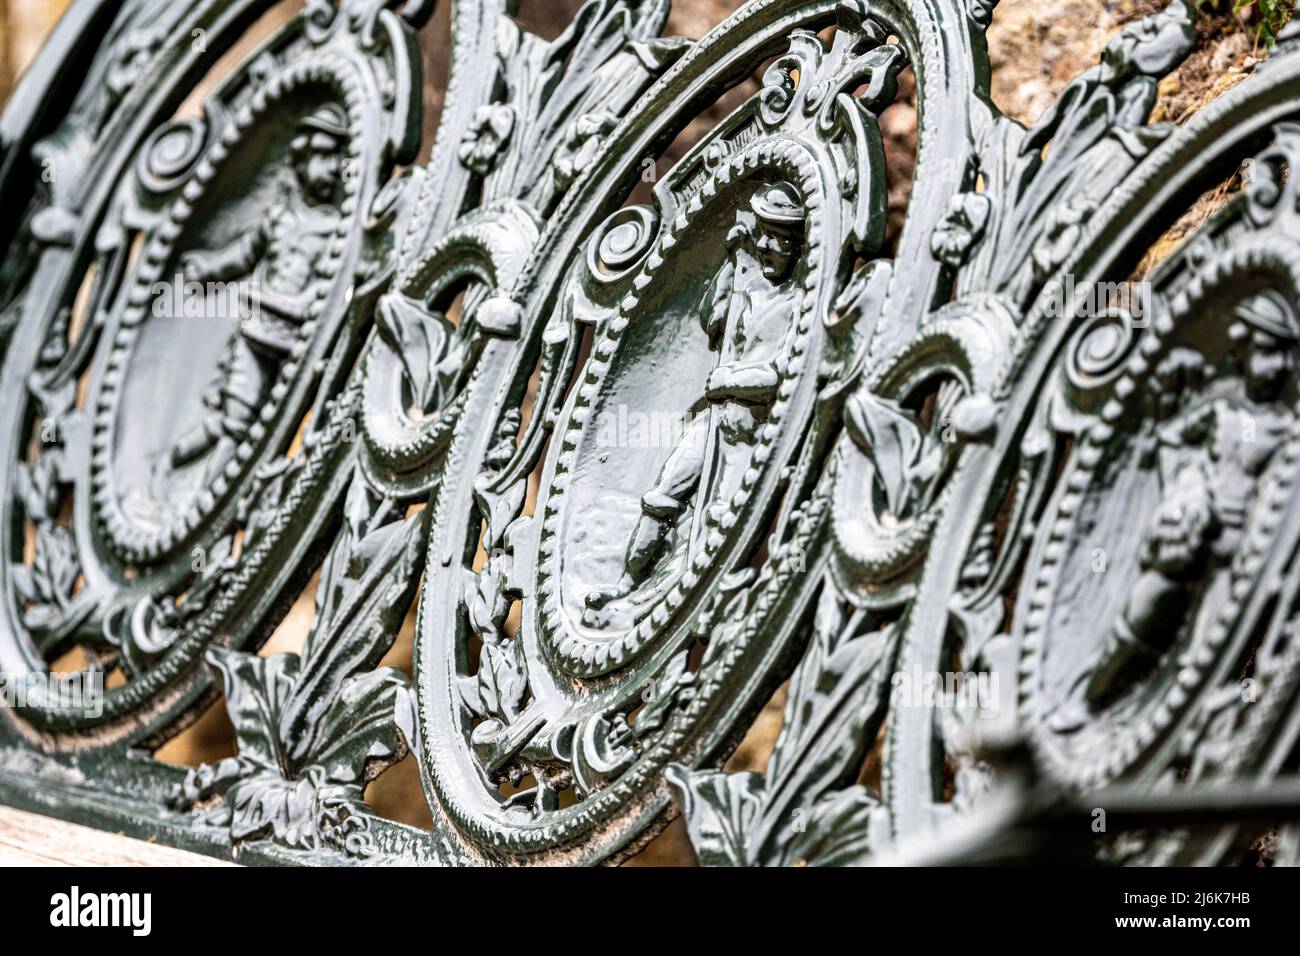 Decorative iron work depicting the gardening seasons, Chatsworth House, Derbyshire, UK Stock Photo